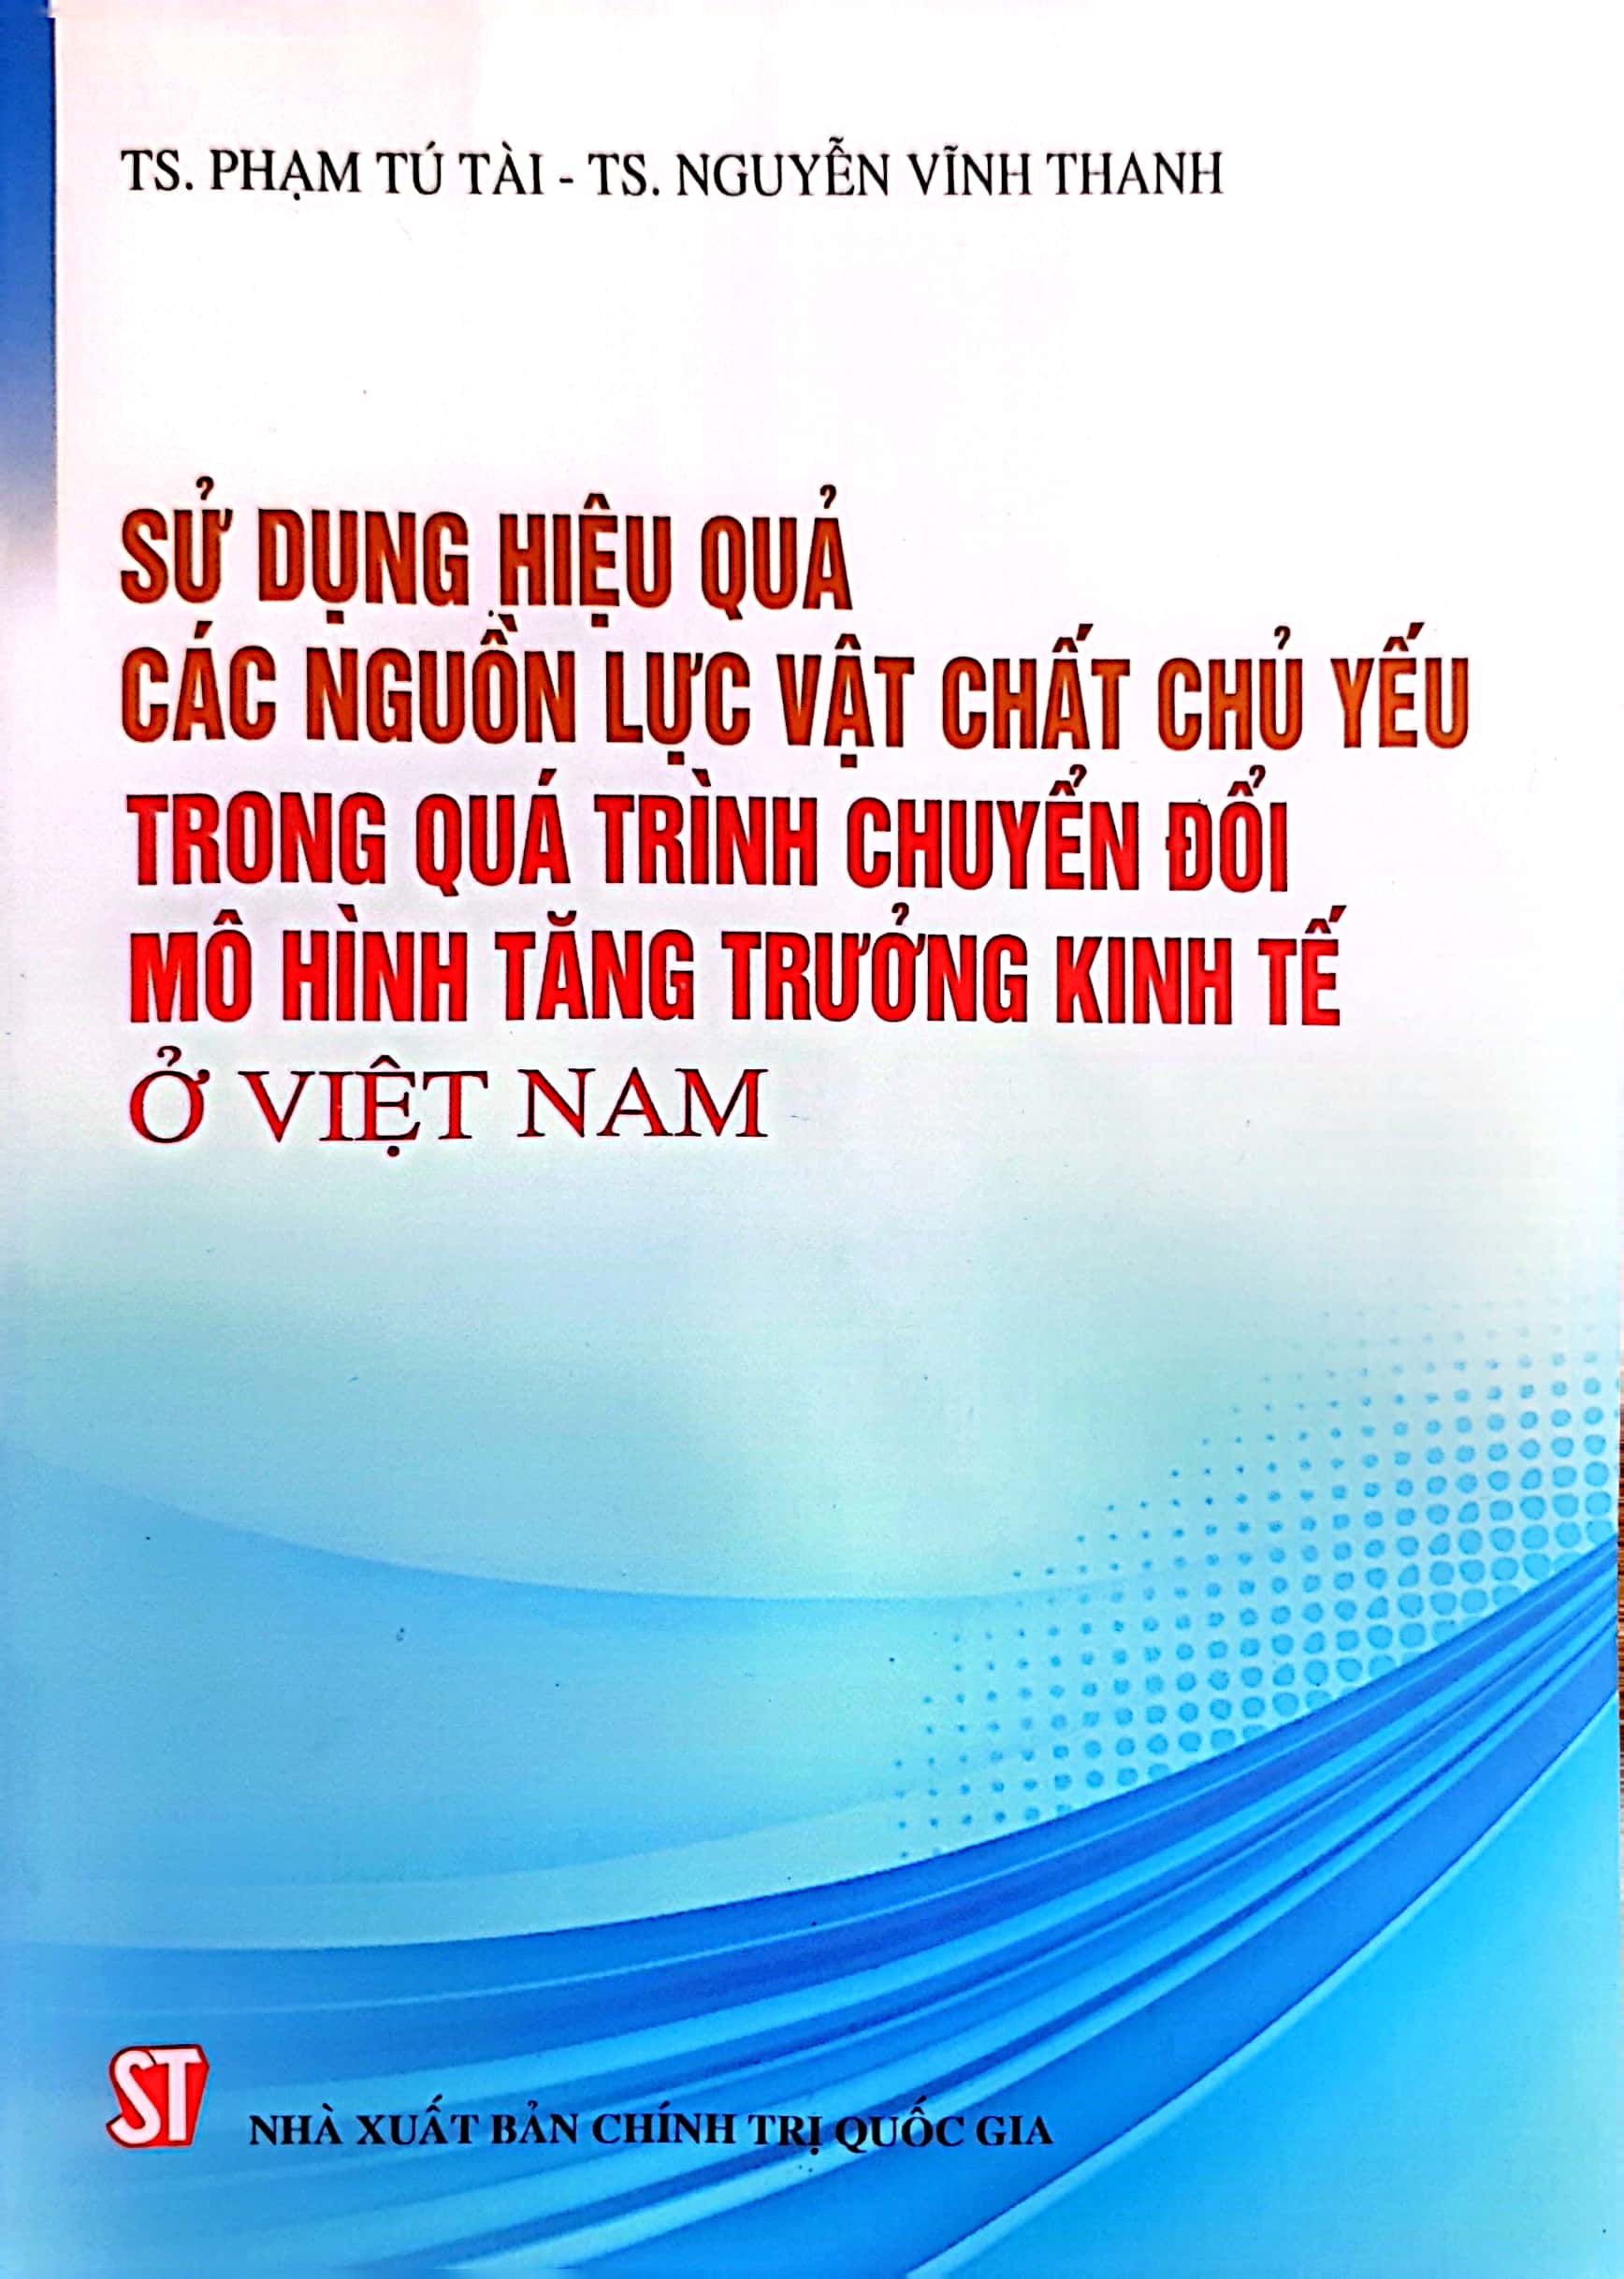 Sử dụng hiệu quả các nguồn lực vật chất chủ yếu trong quá trình chuyển đổi mô hình tăng trưởng kinh tế ở Việt Nam